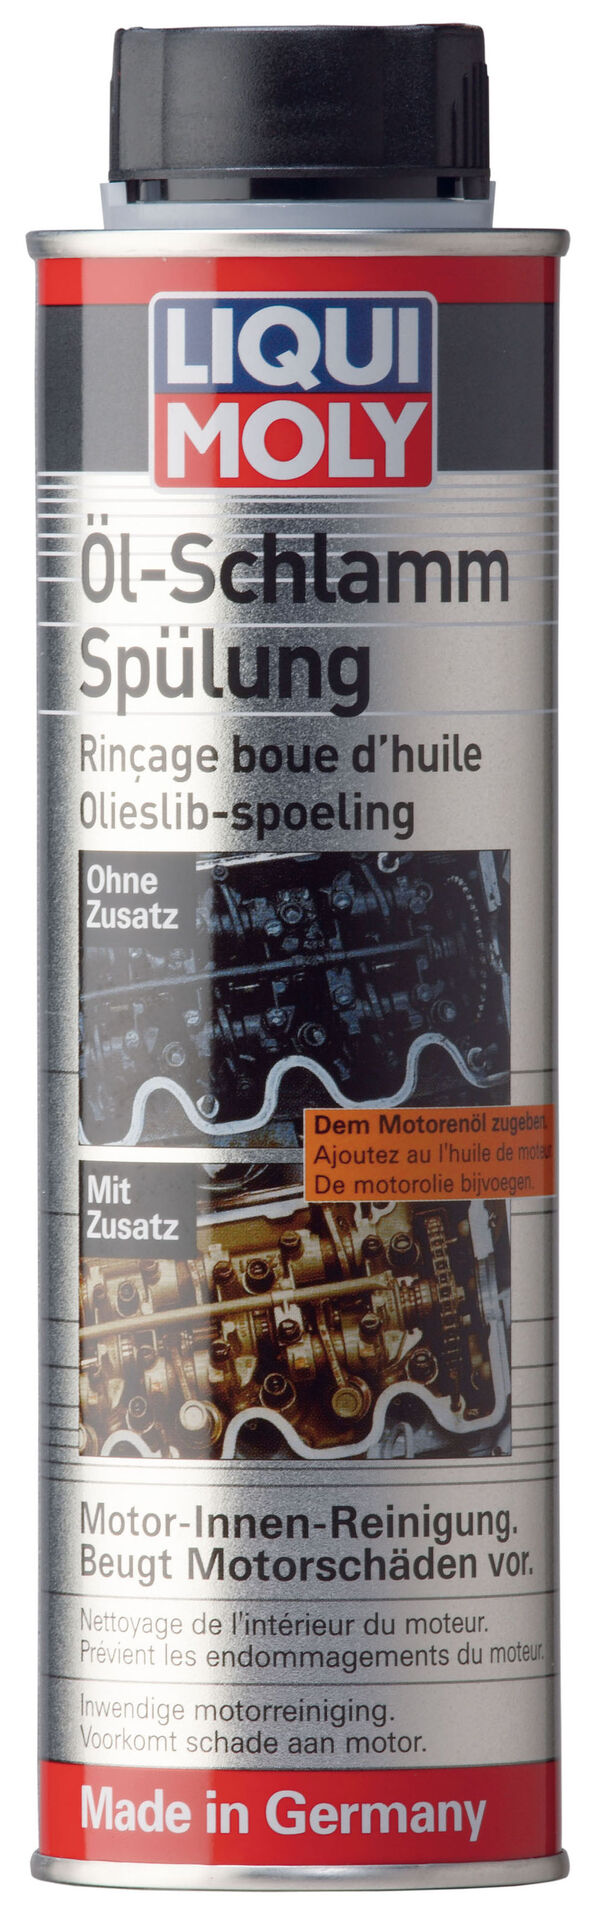 Liqui Moly 5200 1x 300ml Dose Öl-Schlamm-Spülung